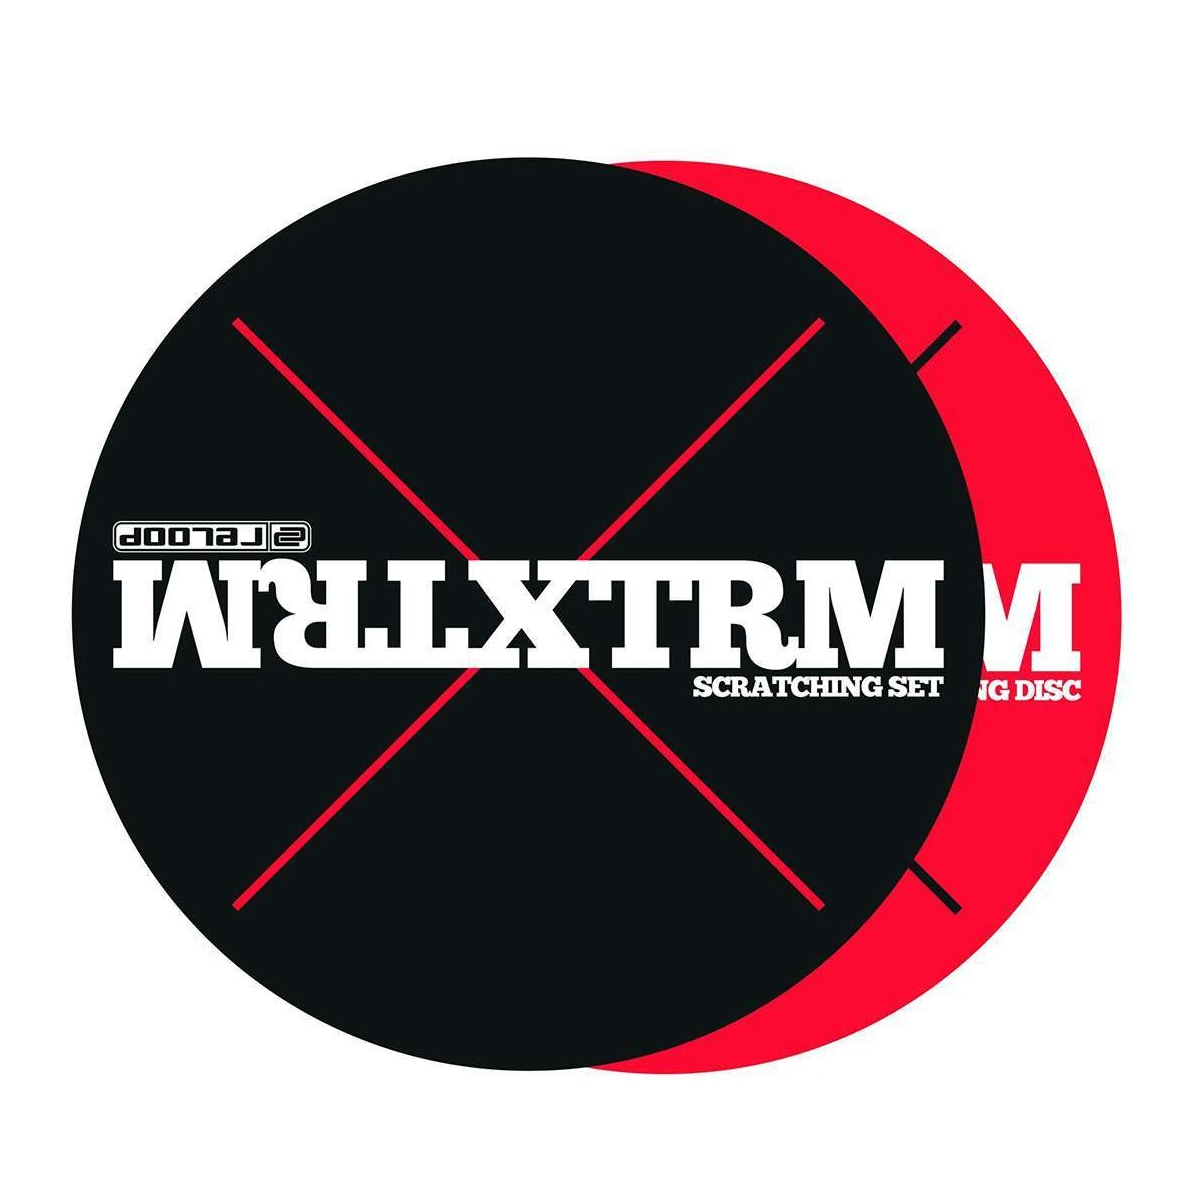 Feutrines platines vinyles - Reloop - XTRM SCRATCHING SET